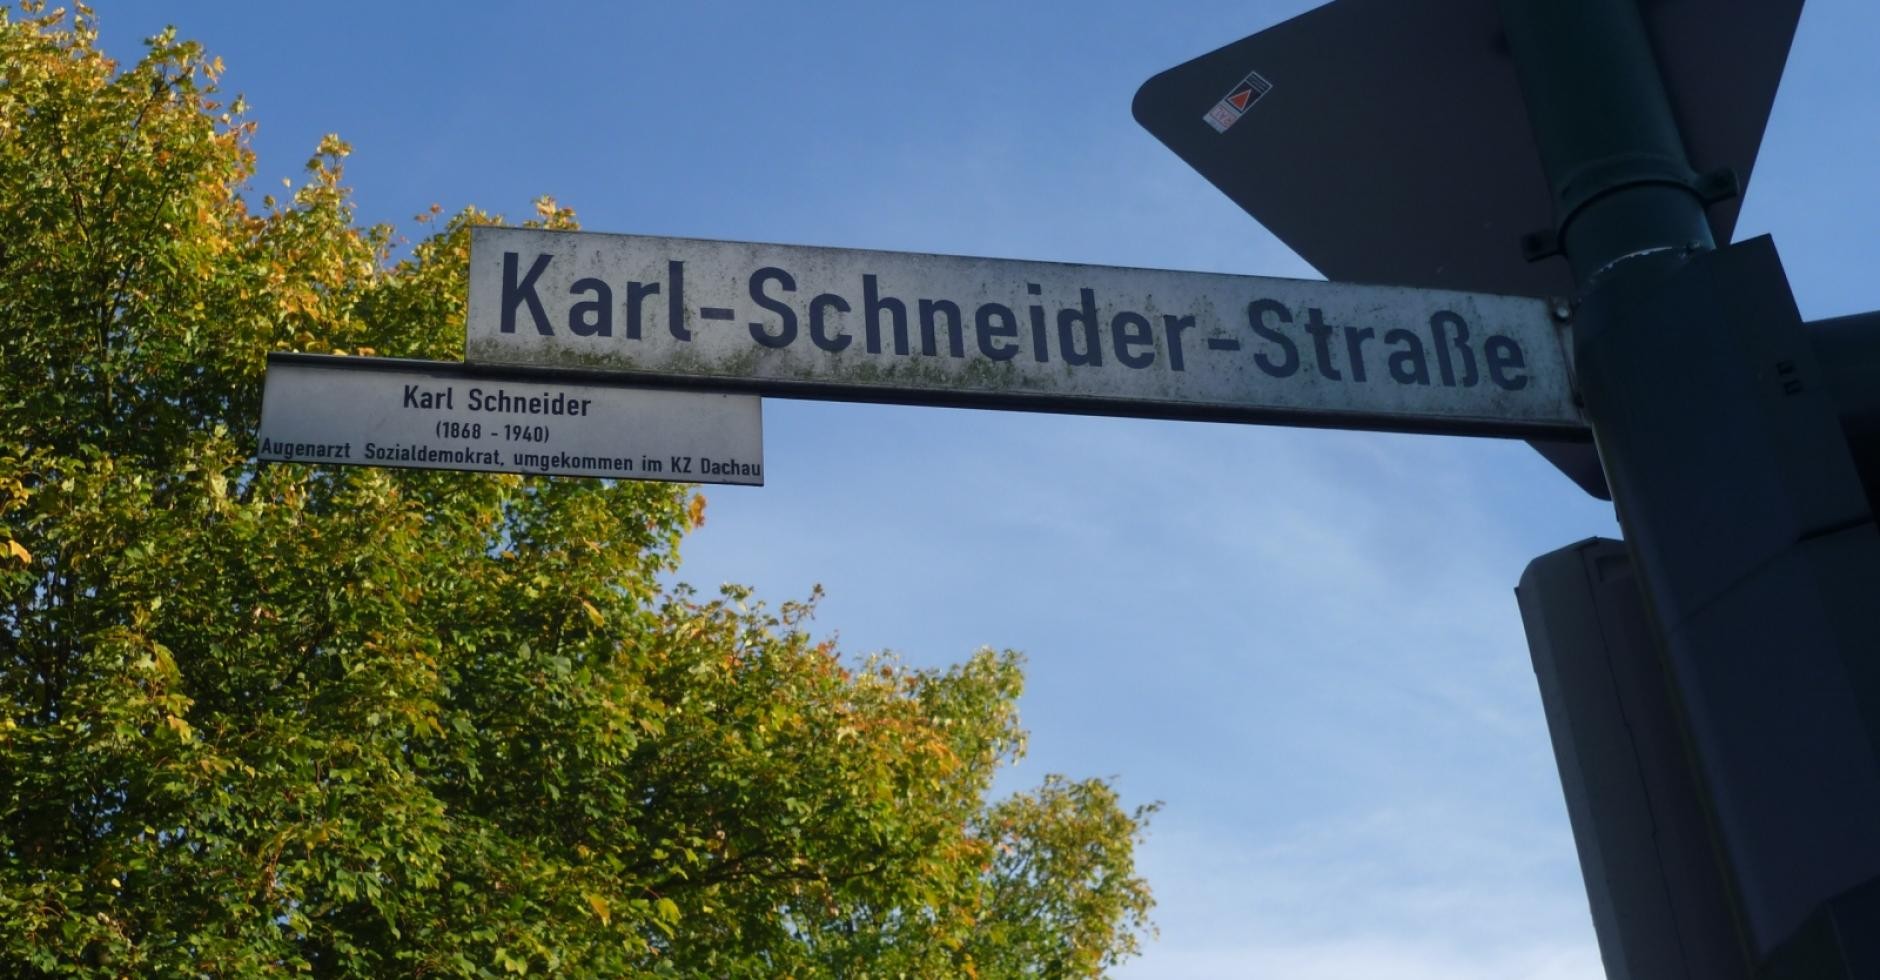 Karl-Schneider-Straße in Neunkirchen – mit K statt mit C